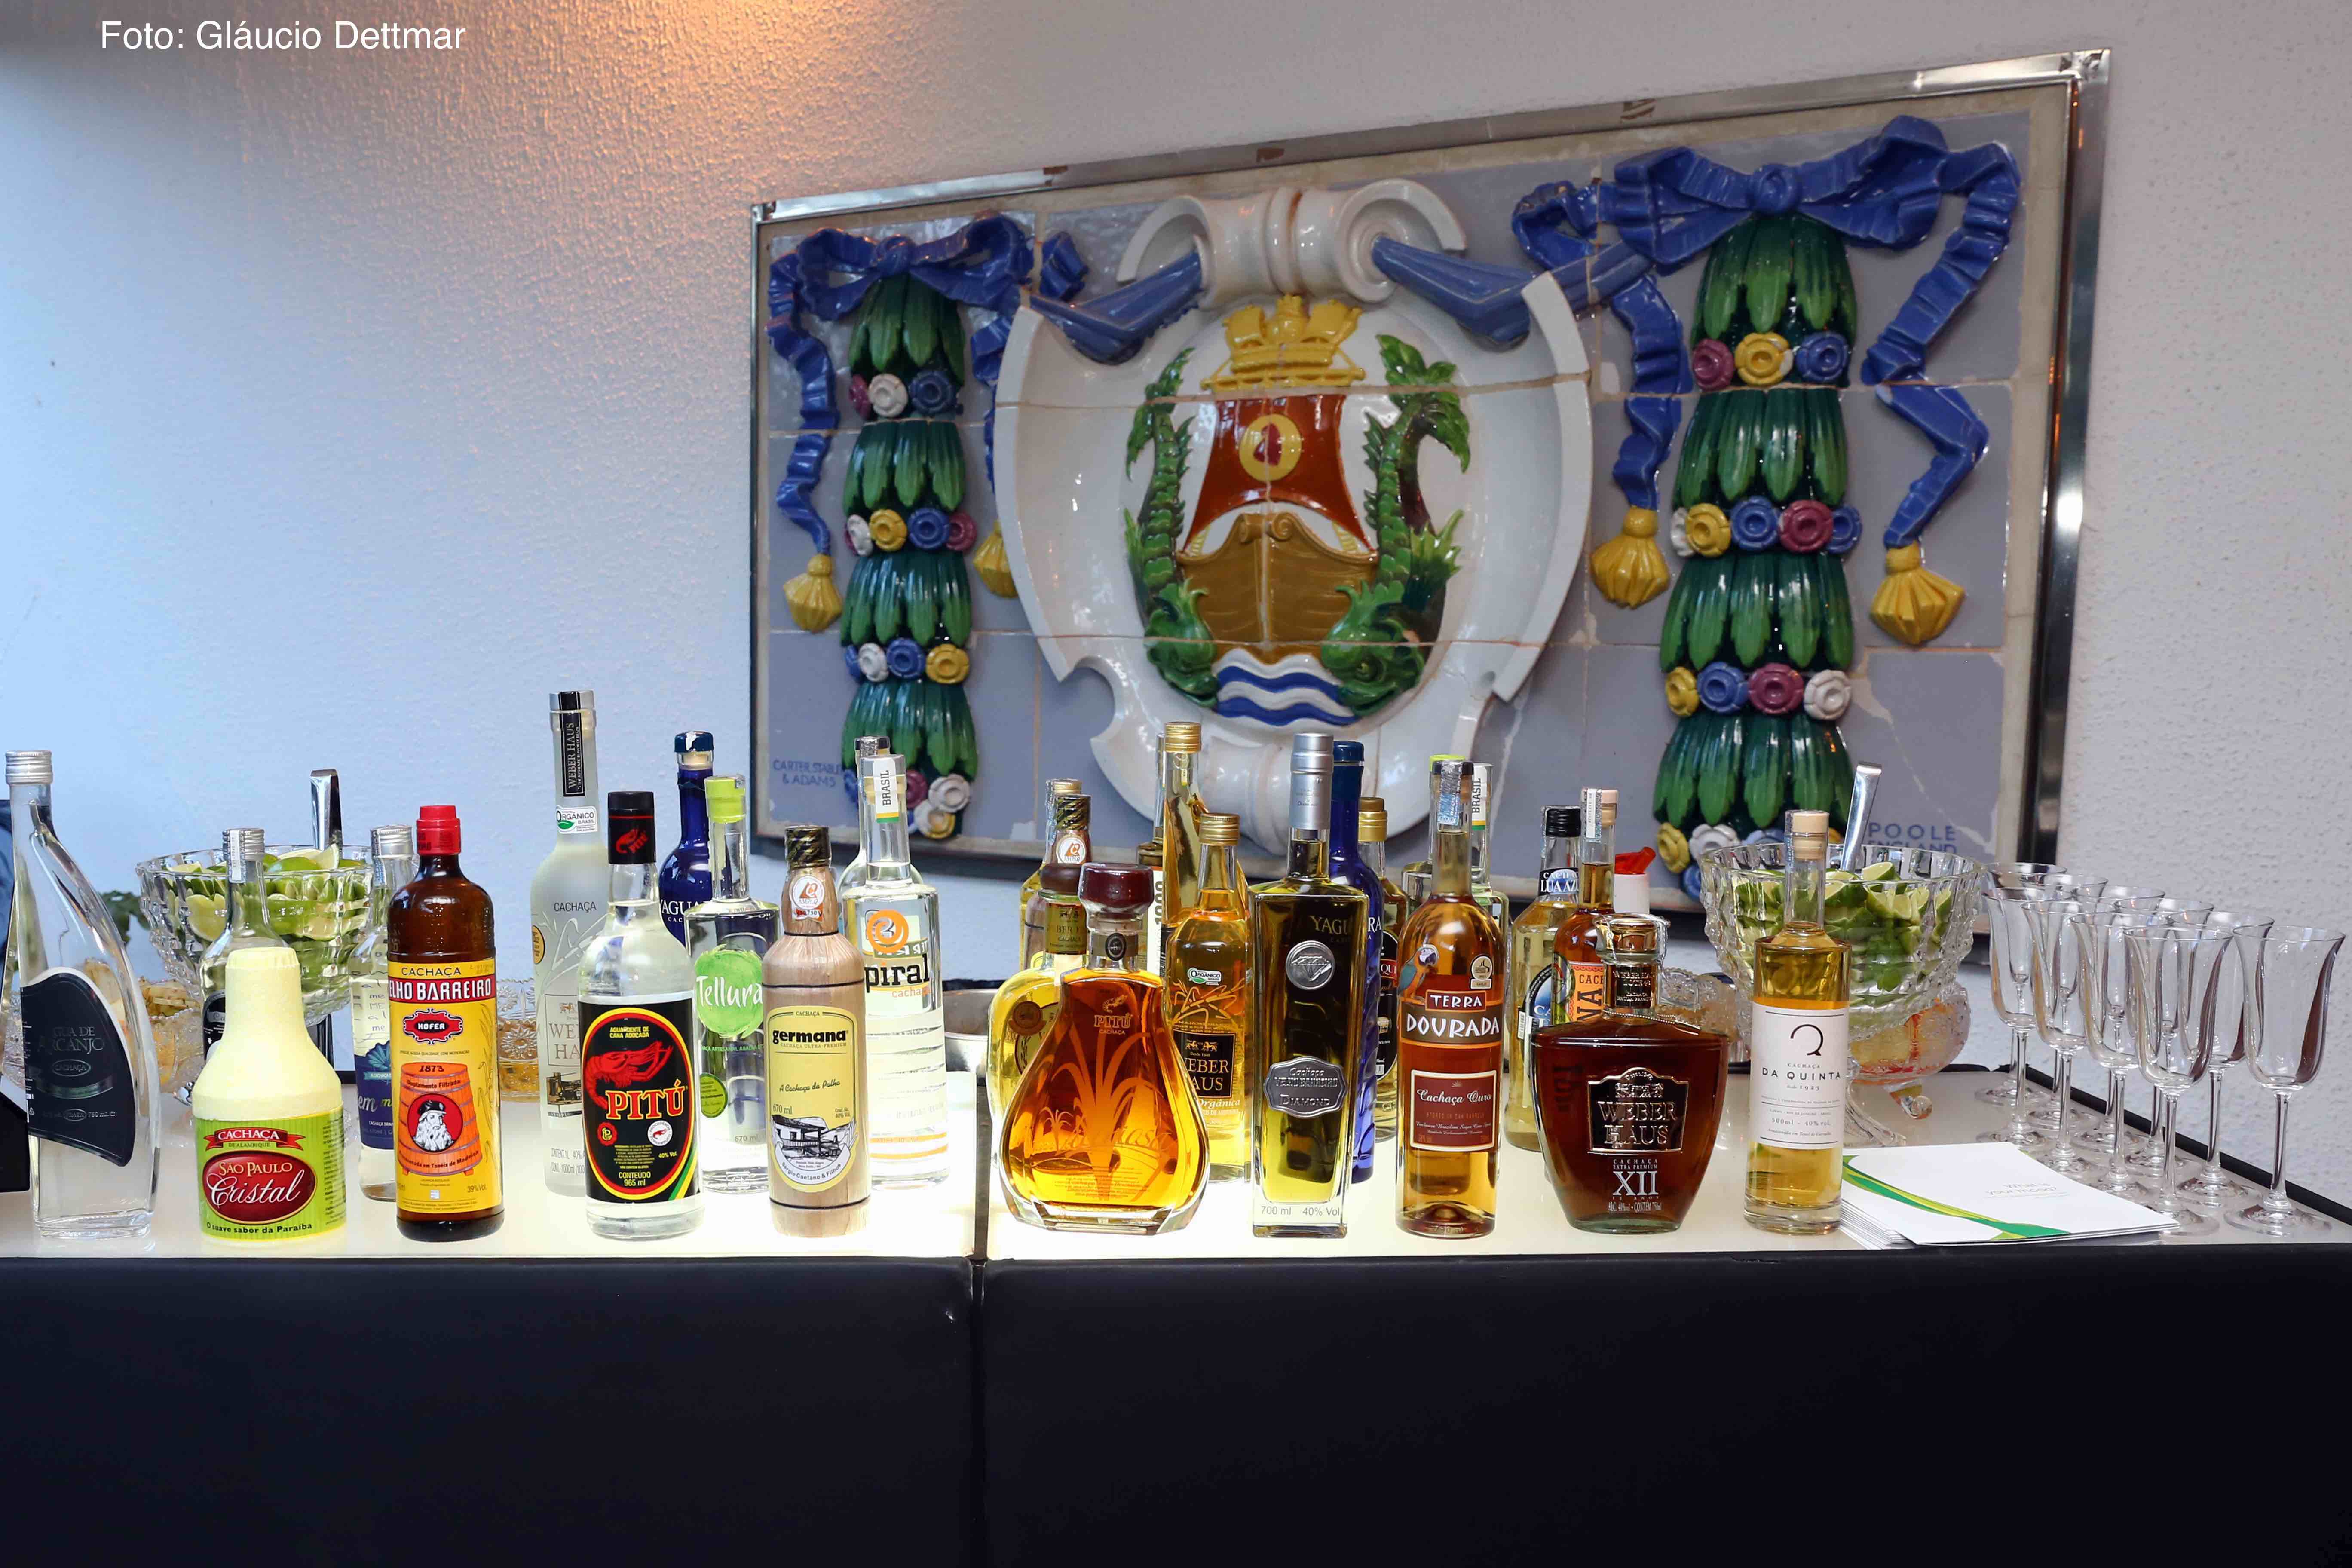 Coquetel Instituto Brasileiro da Cachaça e Scotch Whisky Association